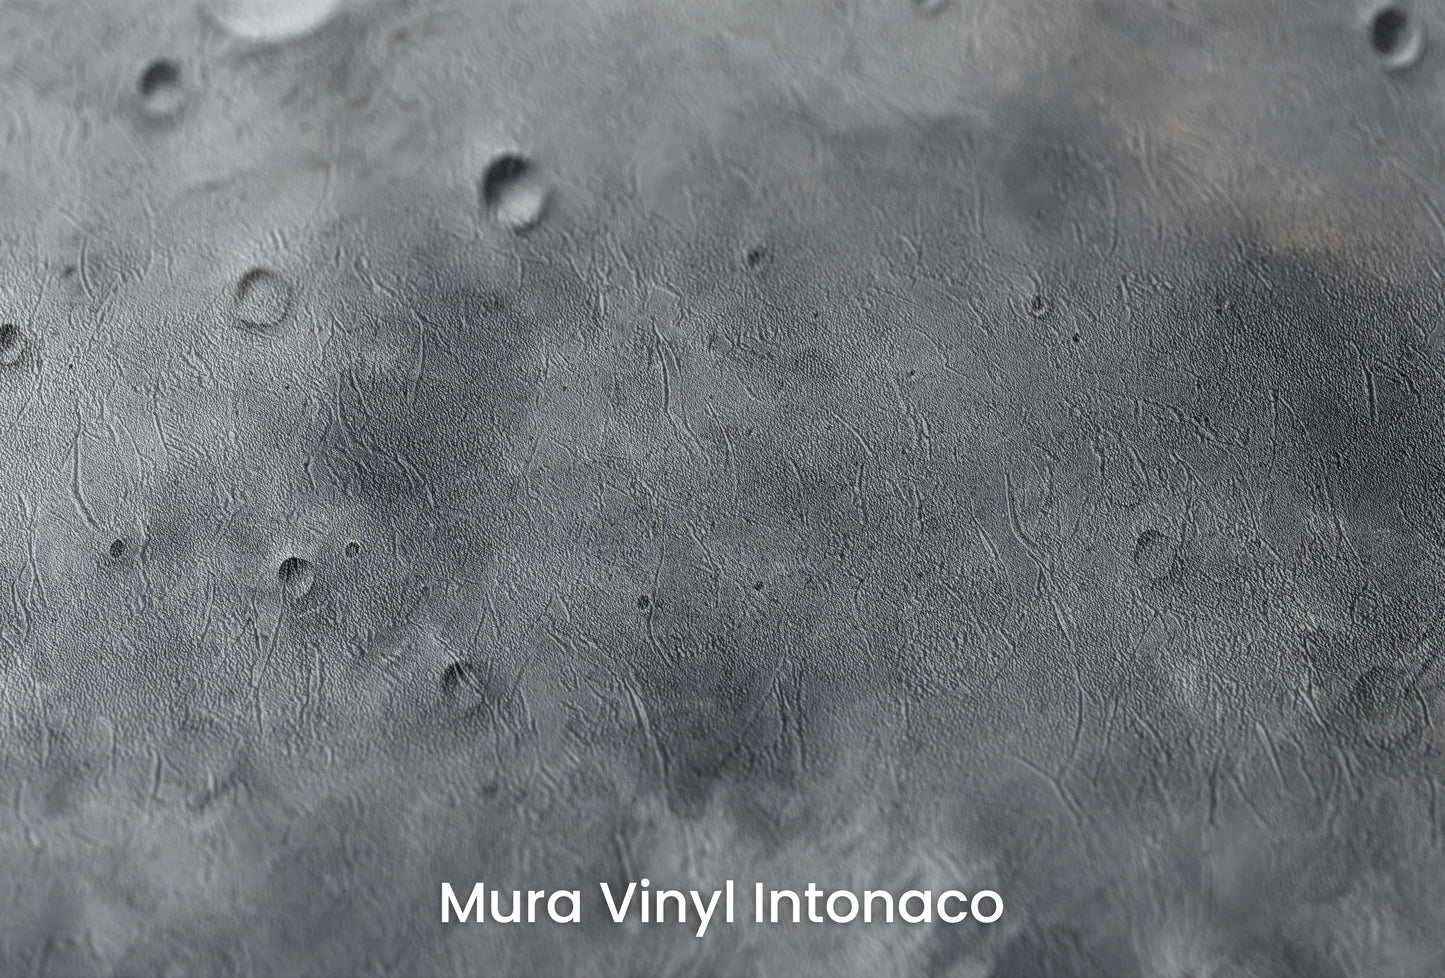 Zbliżenie na artystyczną fototapetę o nazwie Pluto's Mystery na podłożu Mura Vinyl Intonaco - struktura tartego tynku.